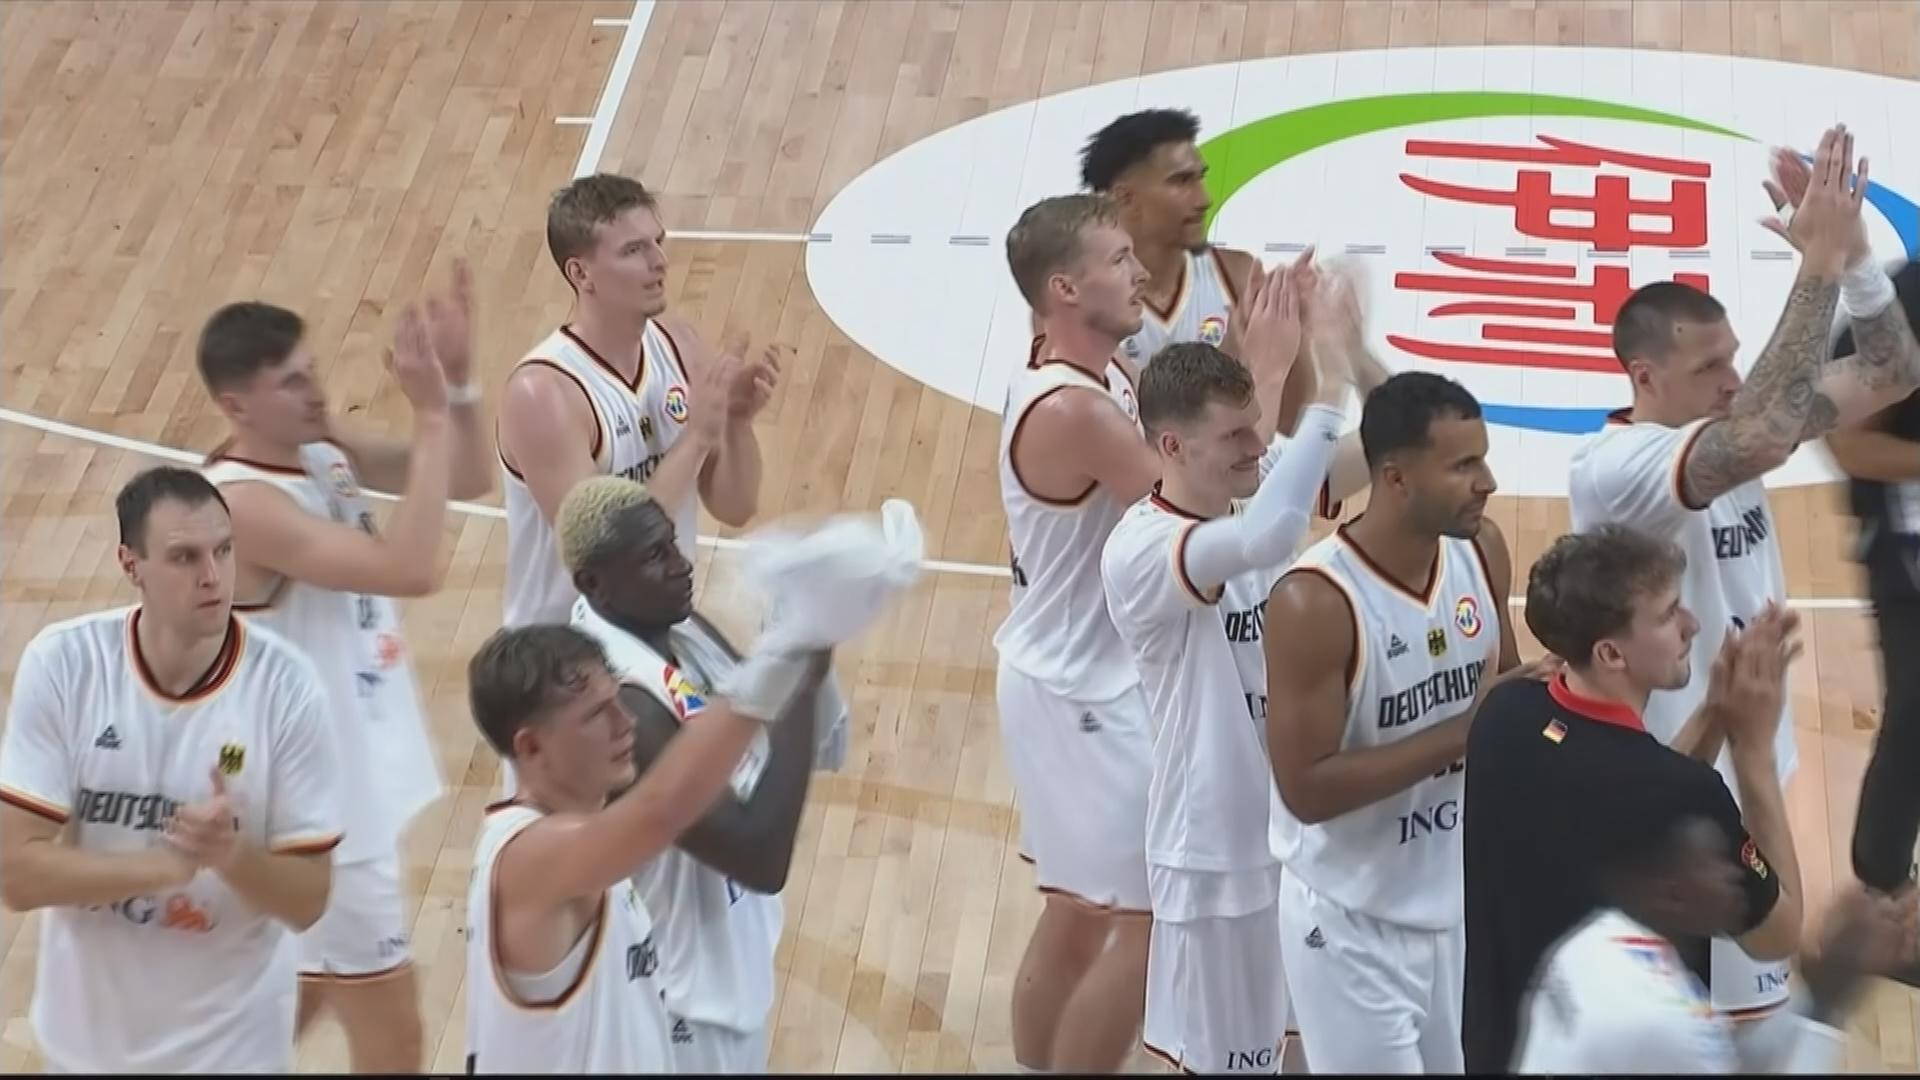 ZDF überträgt Finale der Basketball-WM mit Deutschland live